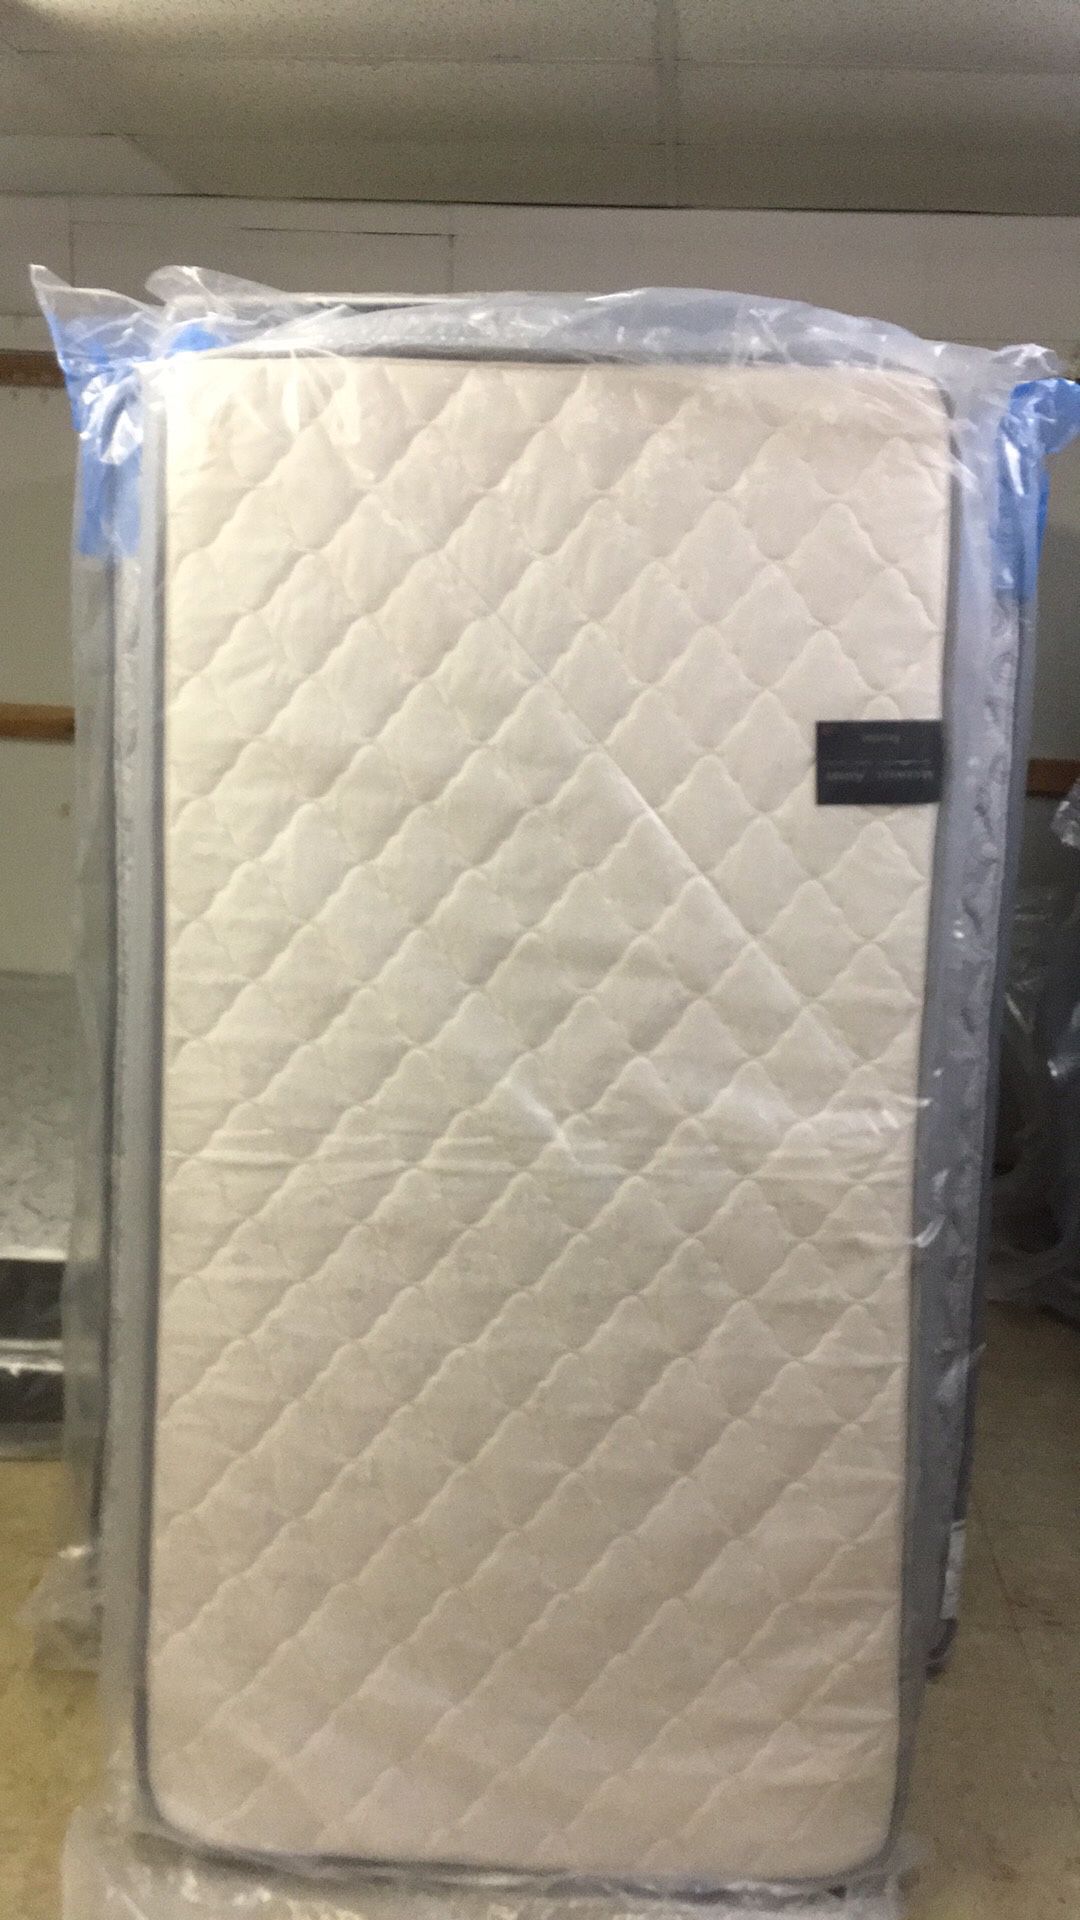 Brand New plush twin size mattress